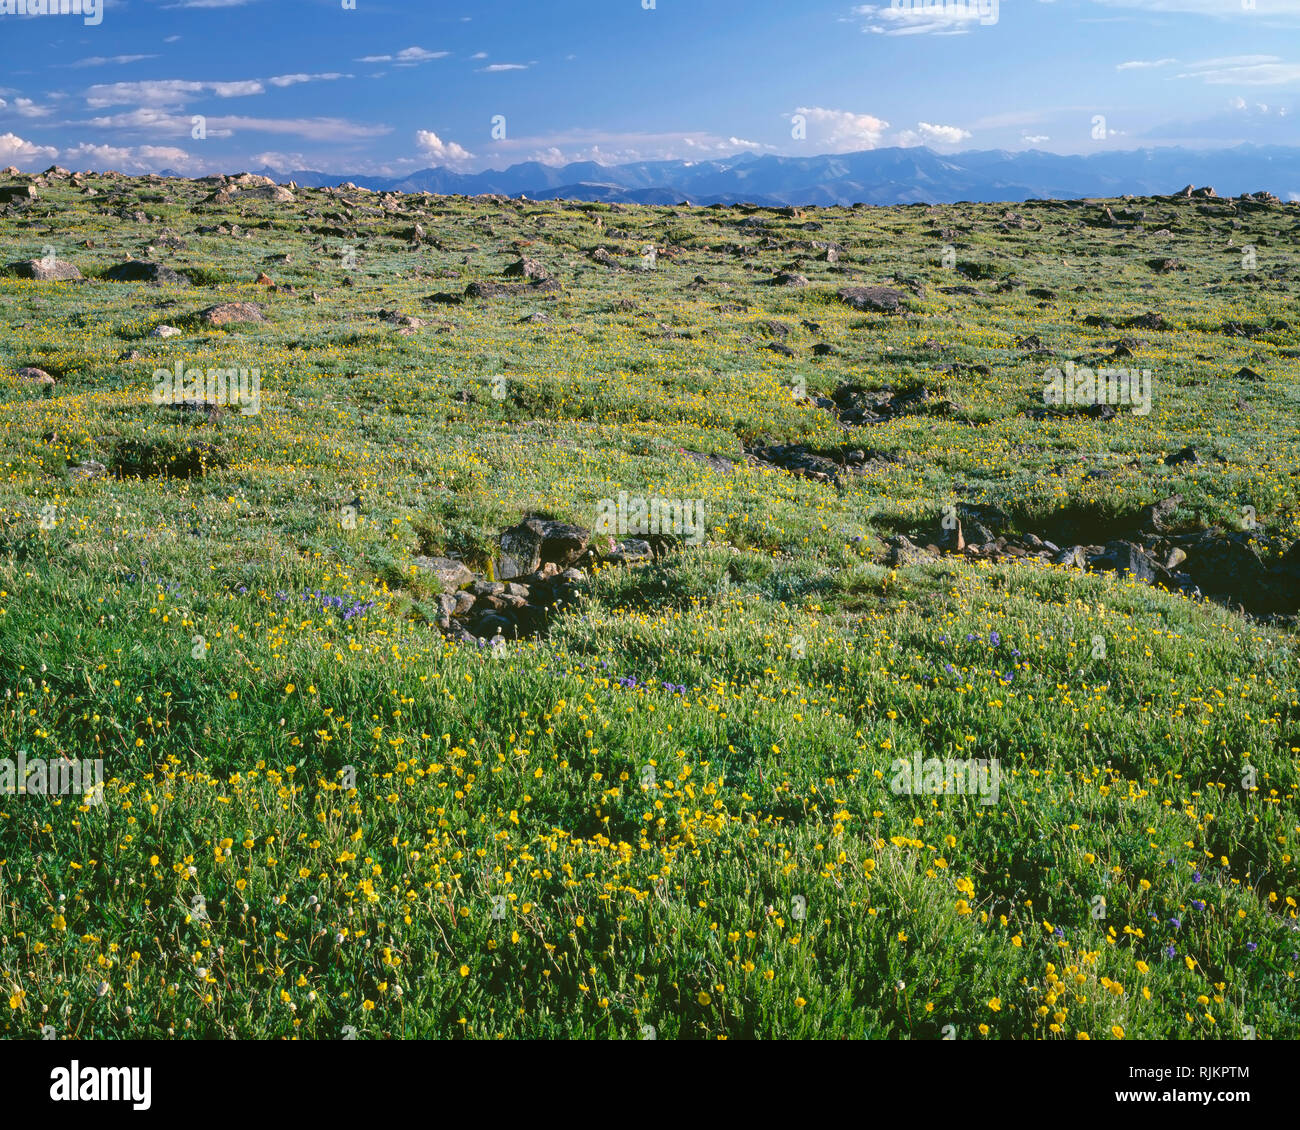 USA, Wyoming, forêt nationale de Shoshone, bloom dans la toundra alpine benoîte de prairie et les pics des montagnes Absaroka au sud ; Col Beartooth. Banque D'Images